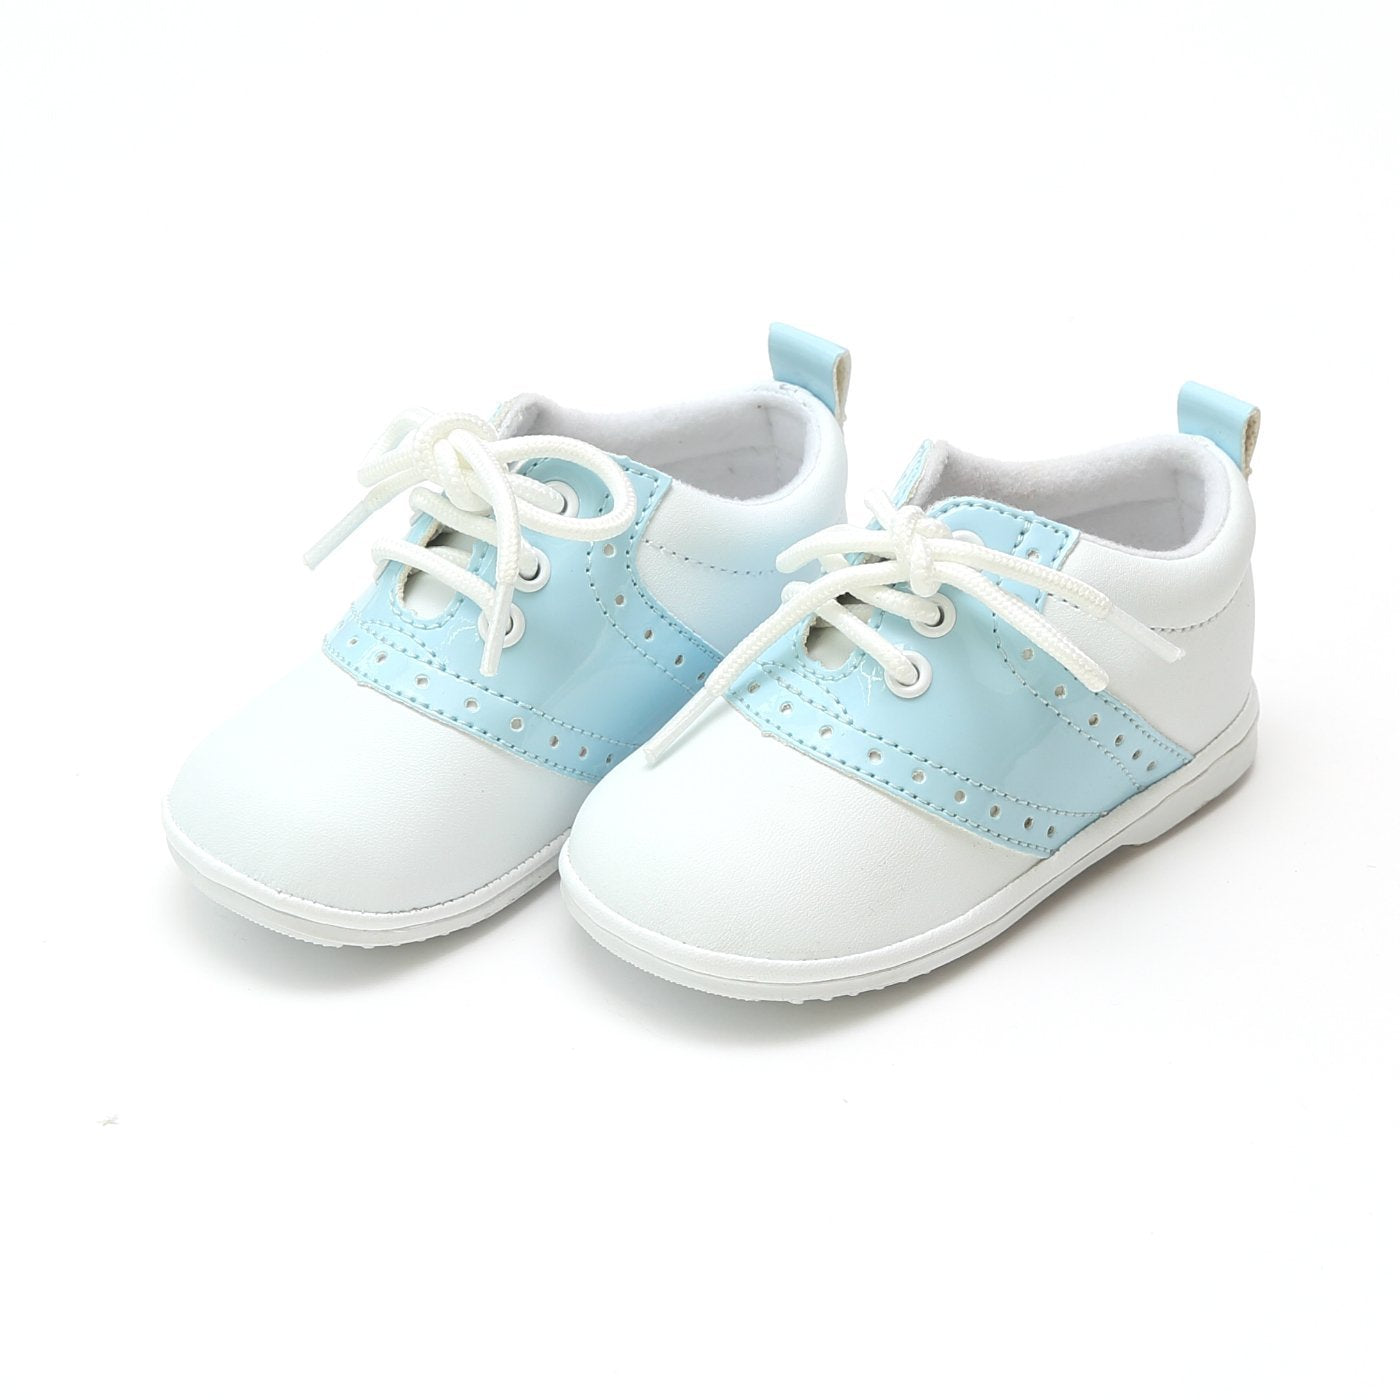 Saddle Shoe Style 2342 - White/Patent Sky Blue